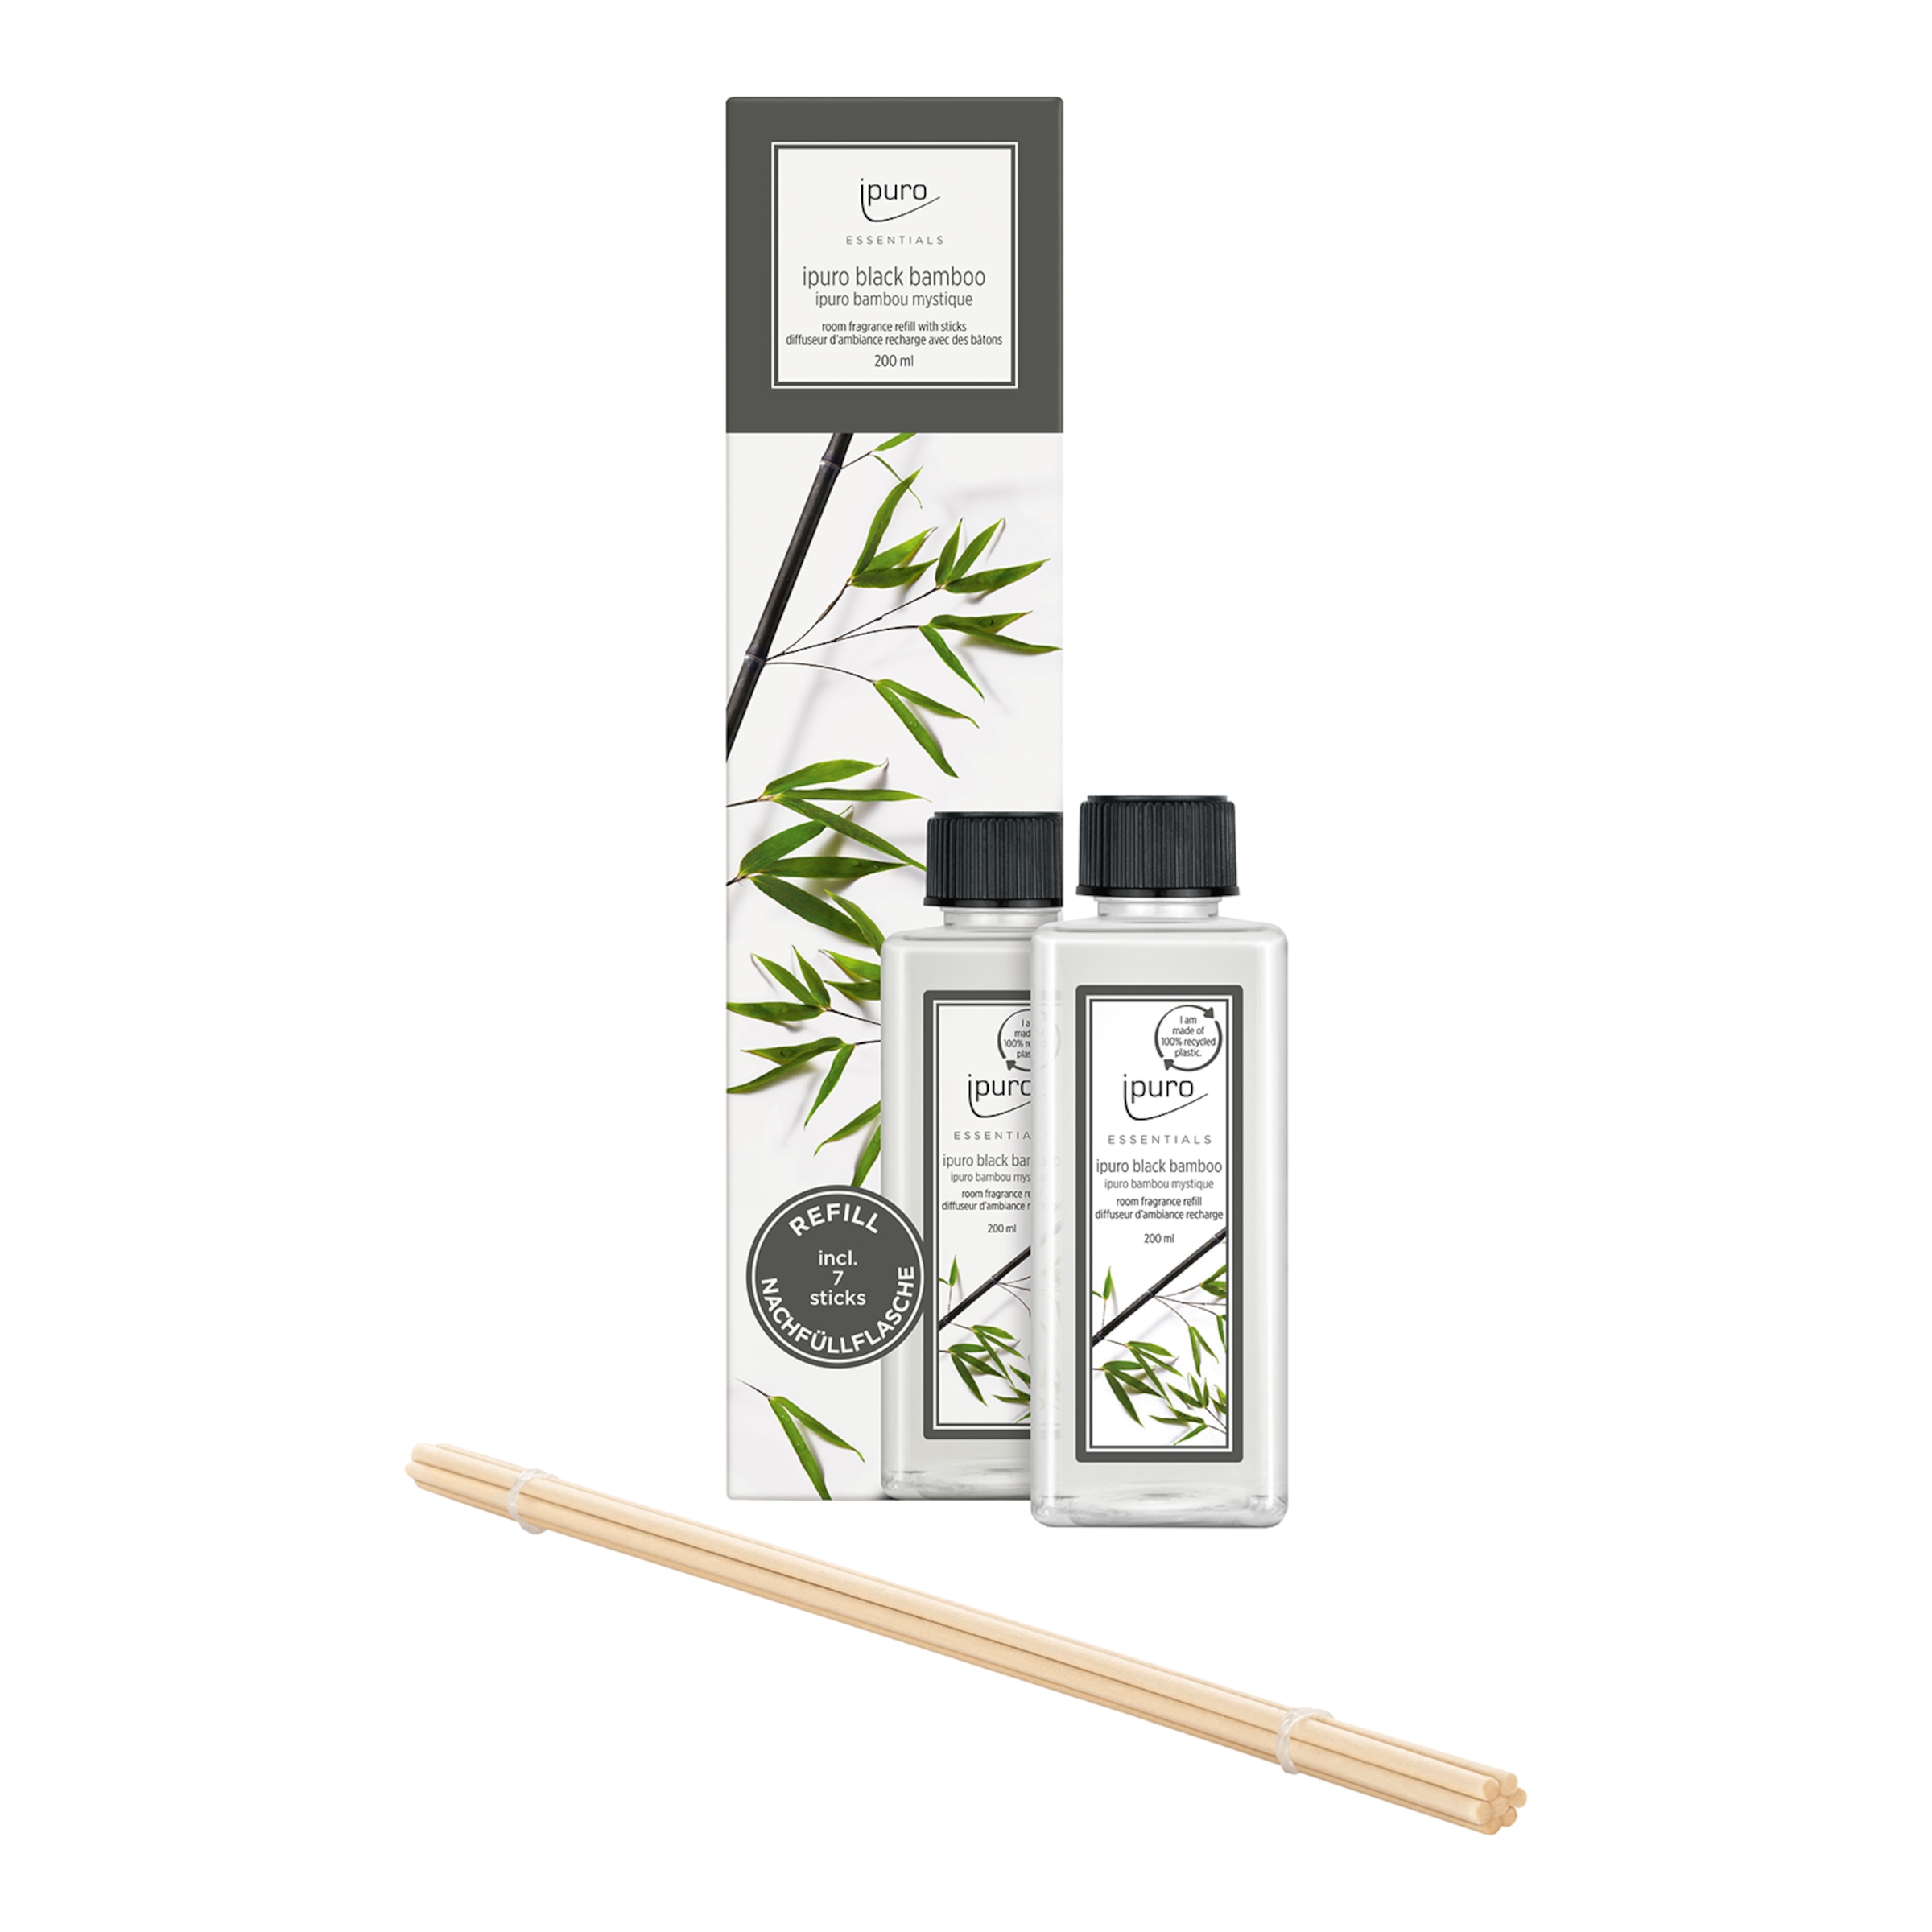 ipuro Essentials Black Bamboo Diffuser - 100 ml